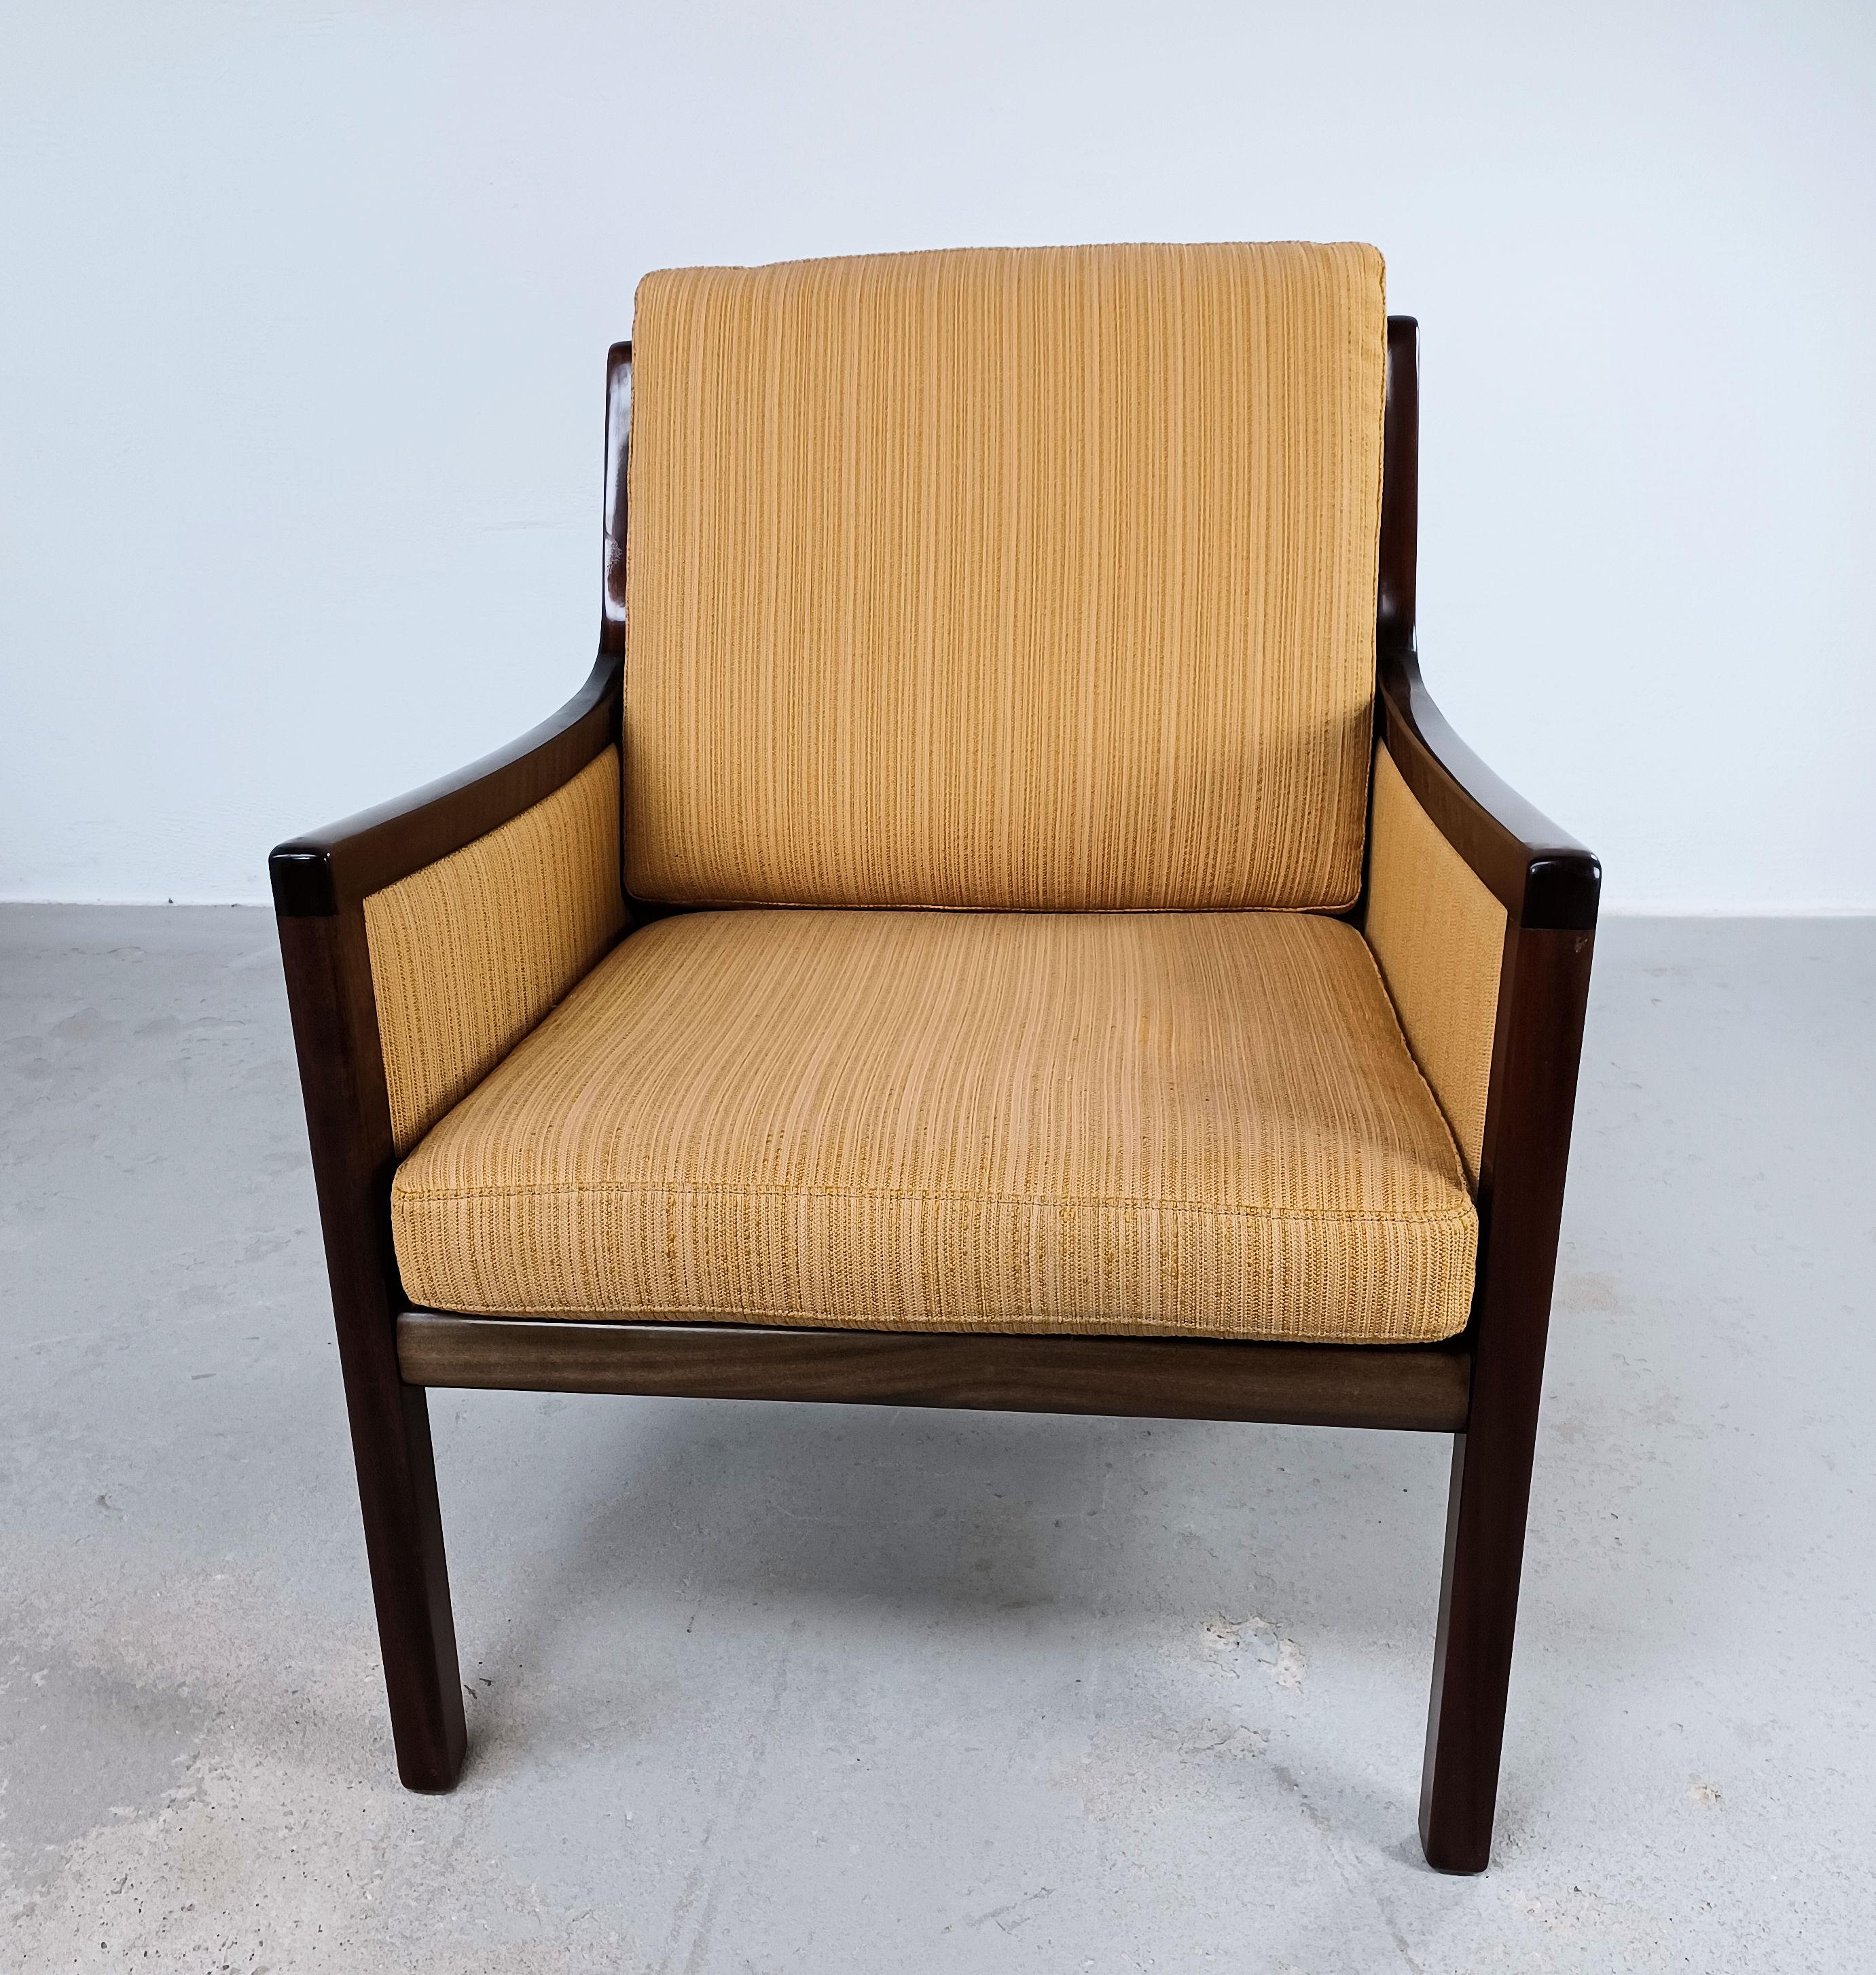 1960's vier vollständig restaurierte Ole Wanscher mahogny Lounge Stühle benutzerdefinierte Upholsterung

Die vier Loungesessel von Ole Wanscher mit ihren bescheidenen, klassischen Formen zeugen von der schlichten und raffinierten Ästhetik, die er